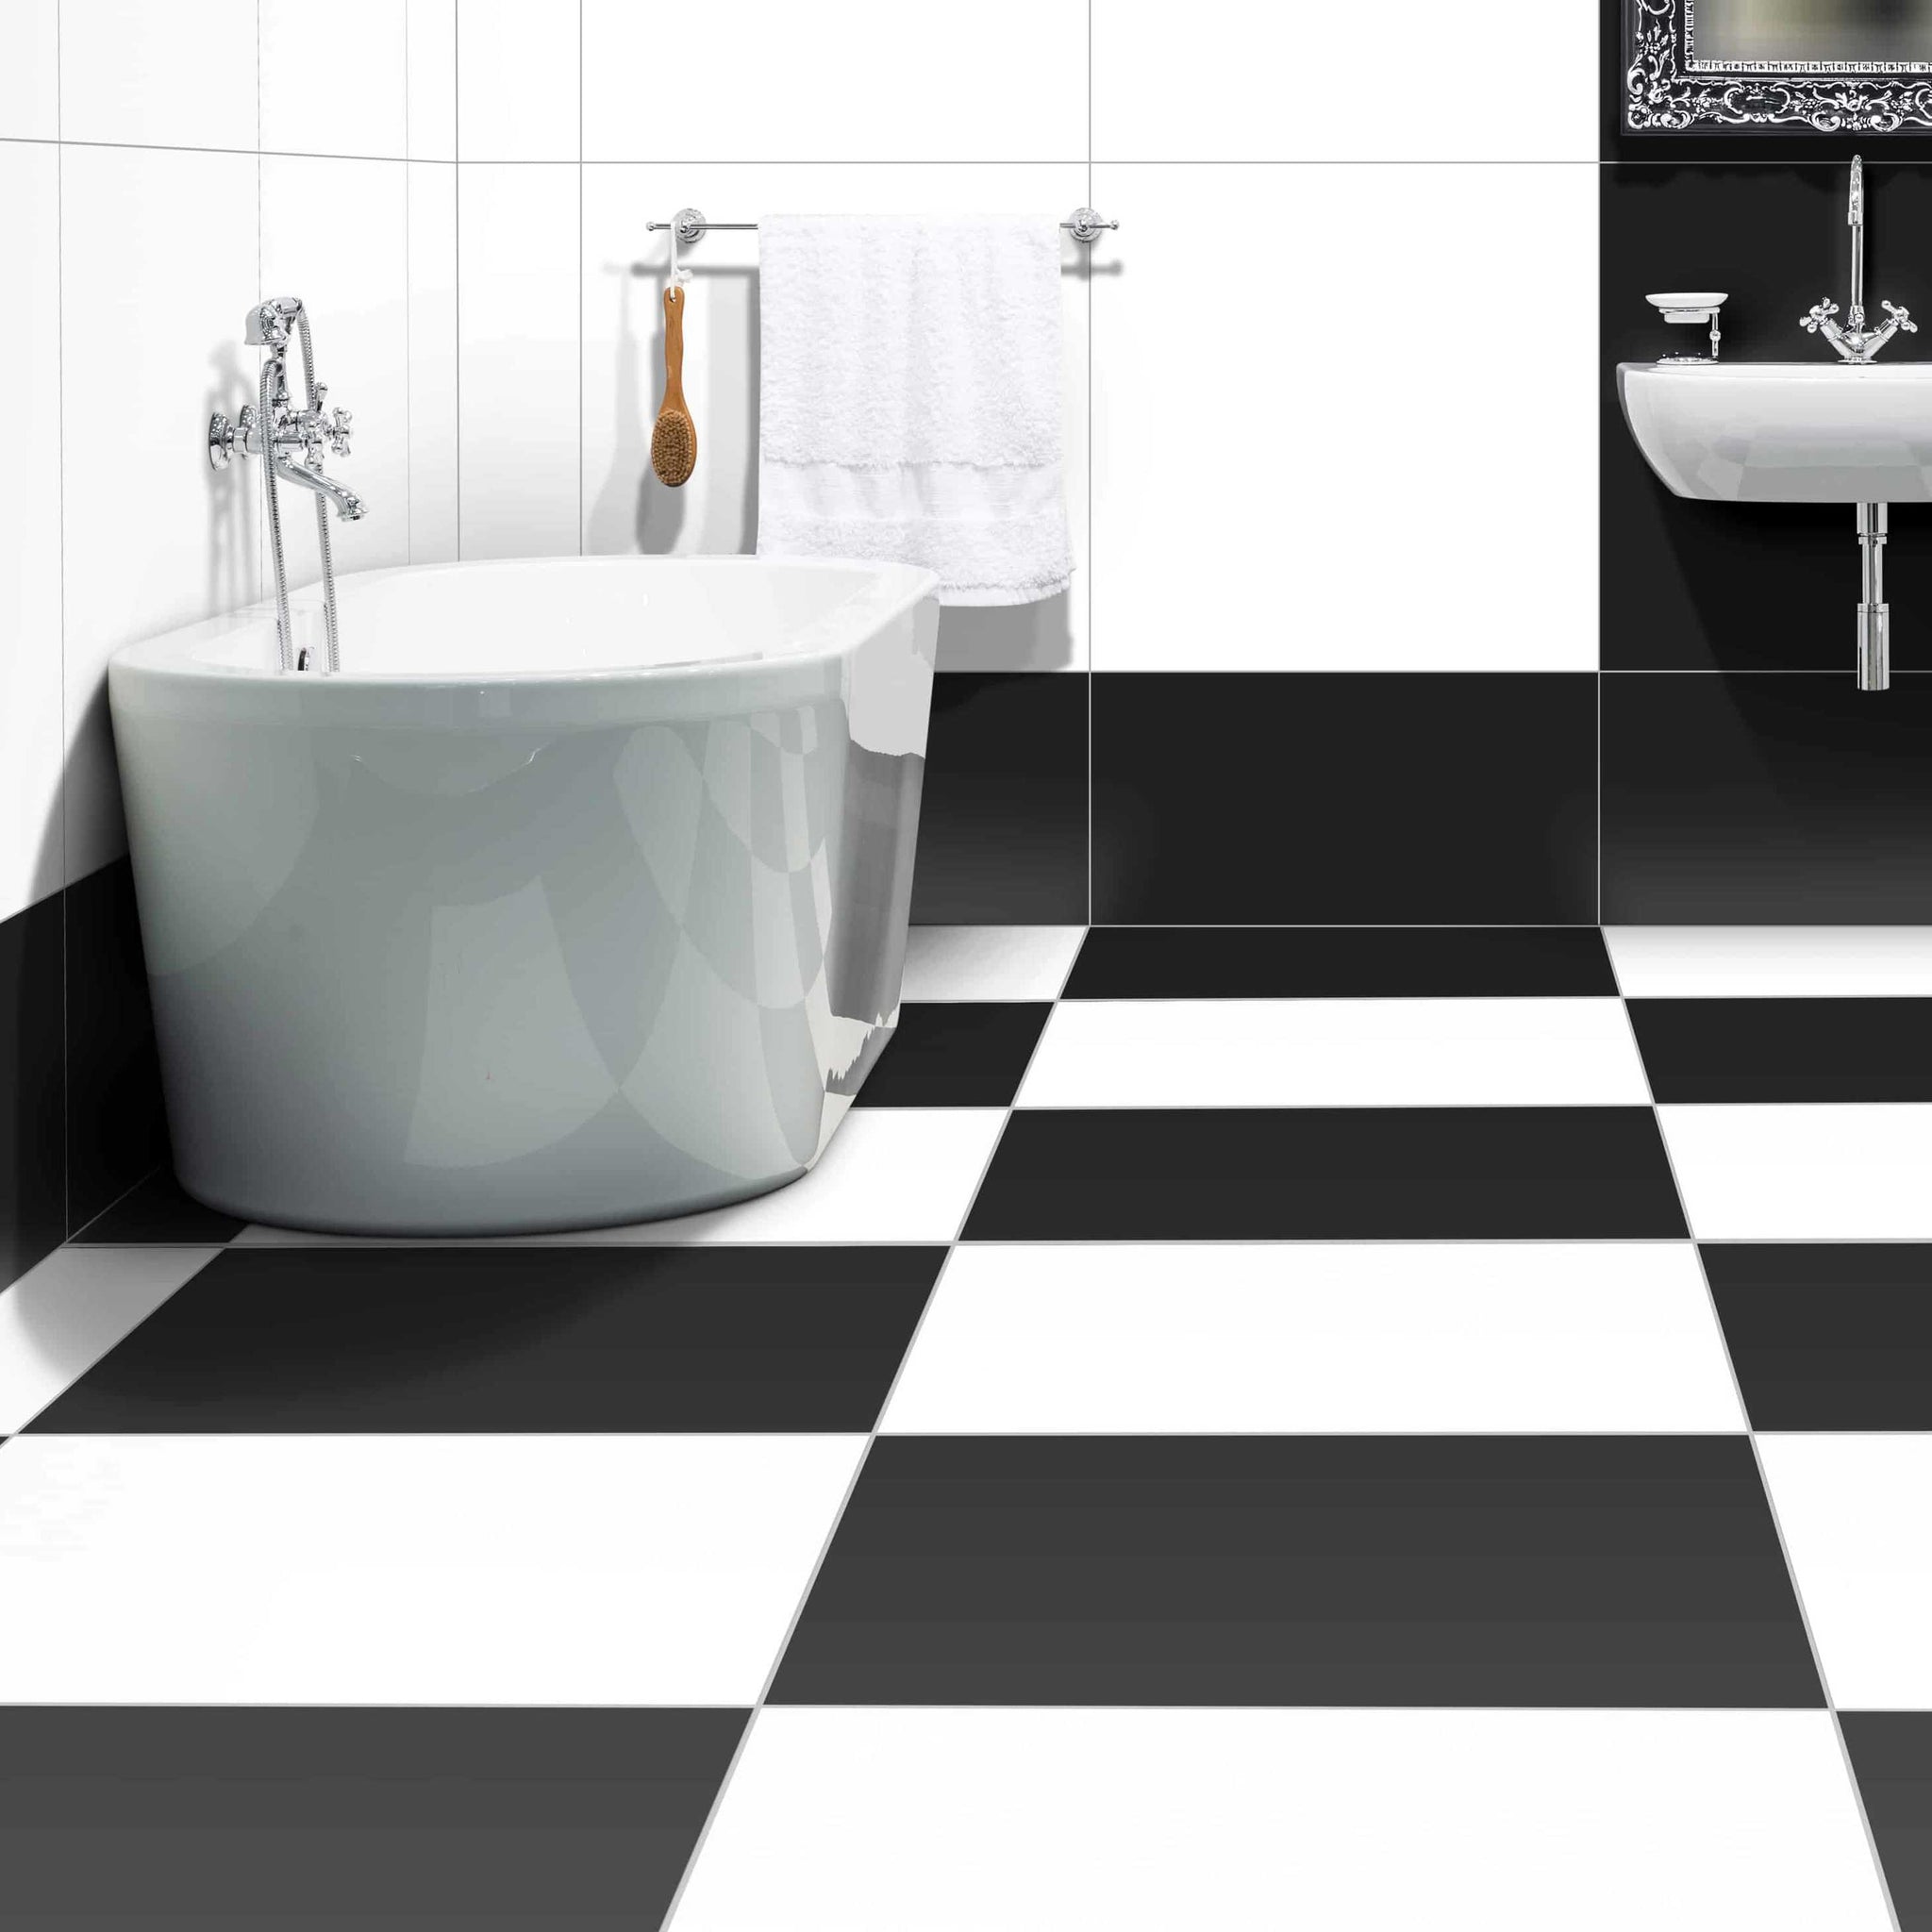 Iceland Salle de bain Blanc et Noir Mat / Iceland Bathroom White & Black Matte